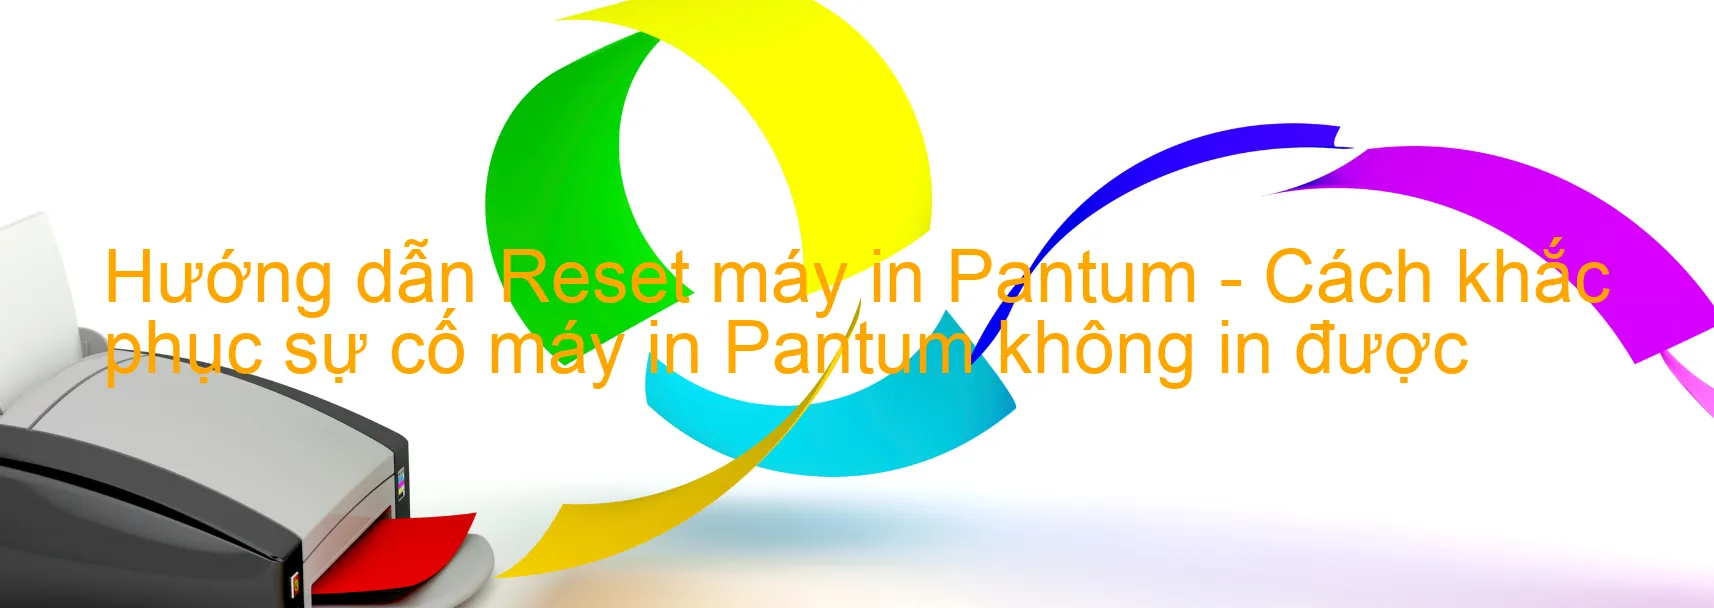 Hướng dẫn Reset máy in Pantum - Cách khắc phục sự cố máy in Pantum không in được